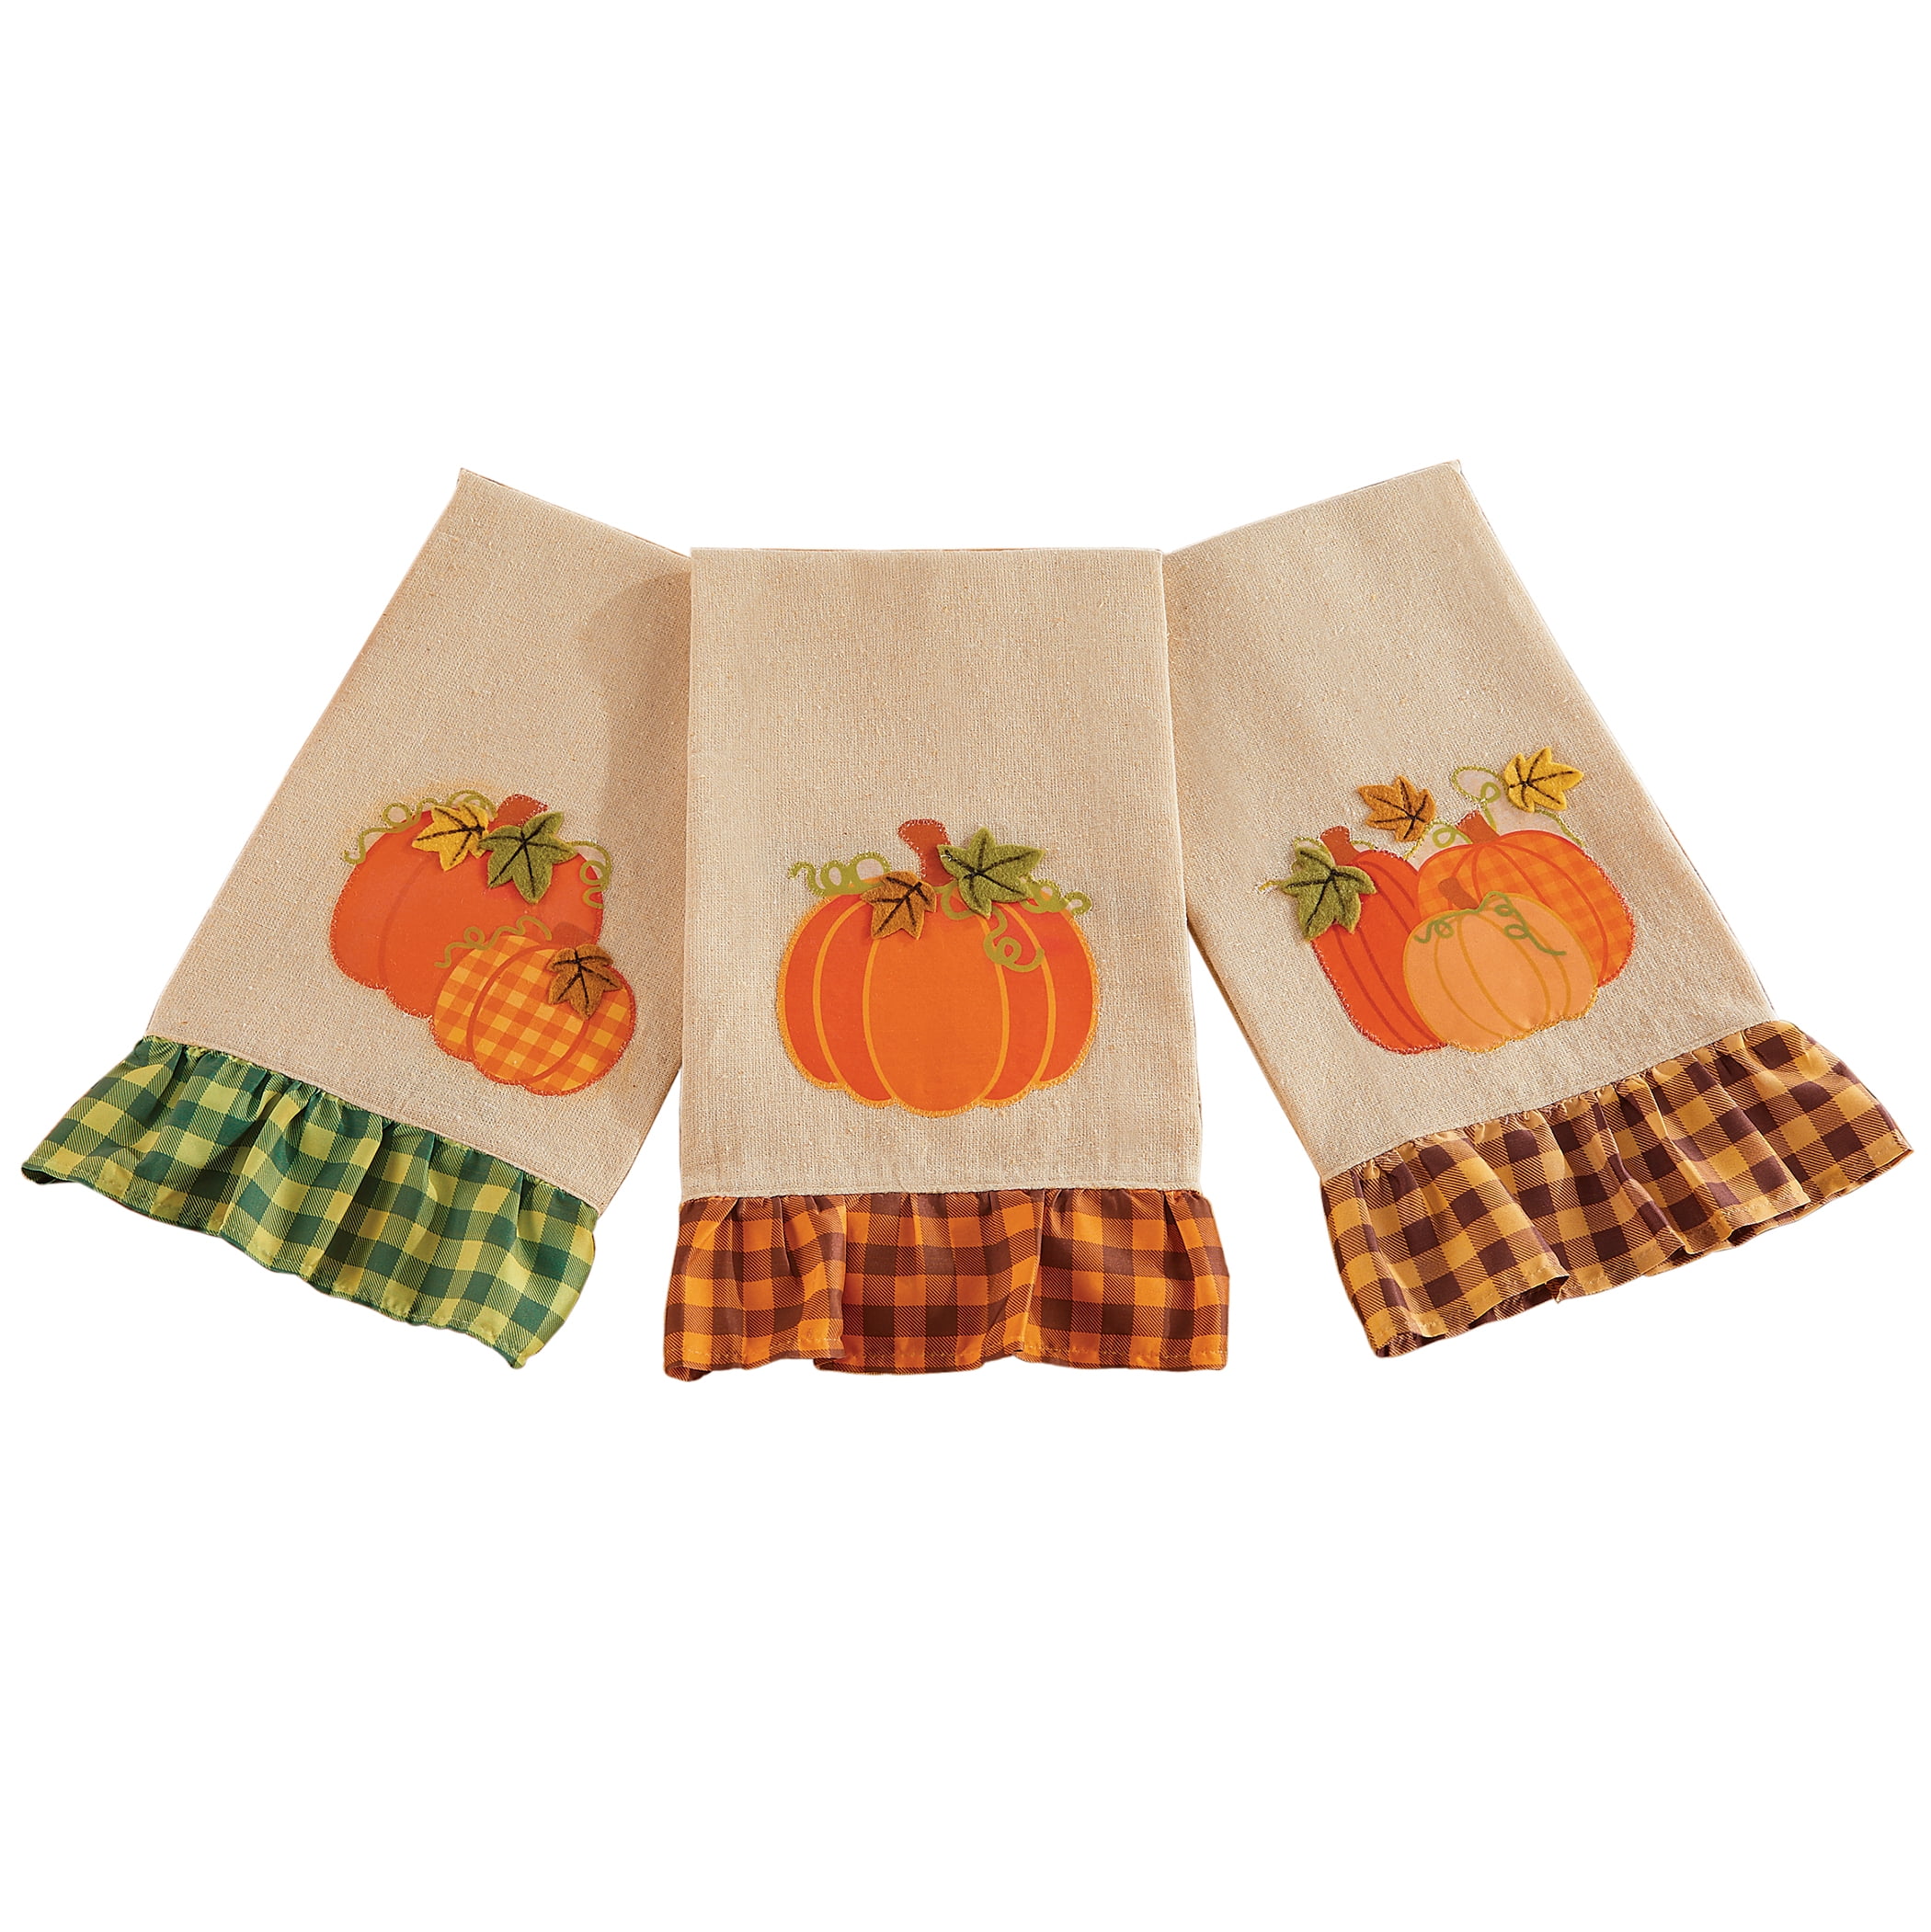 fall kitchen towel fall linens pumpkin dress towel Handmade pumpkins themed dress hanging towel,pumpkin kitchen towel fall kitchen decor